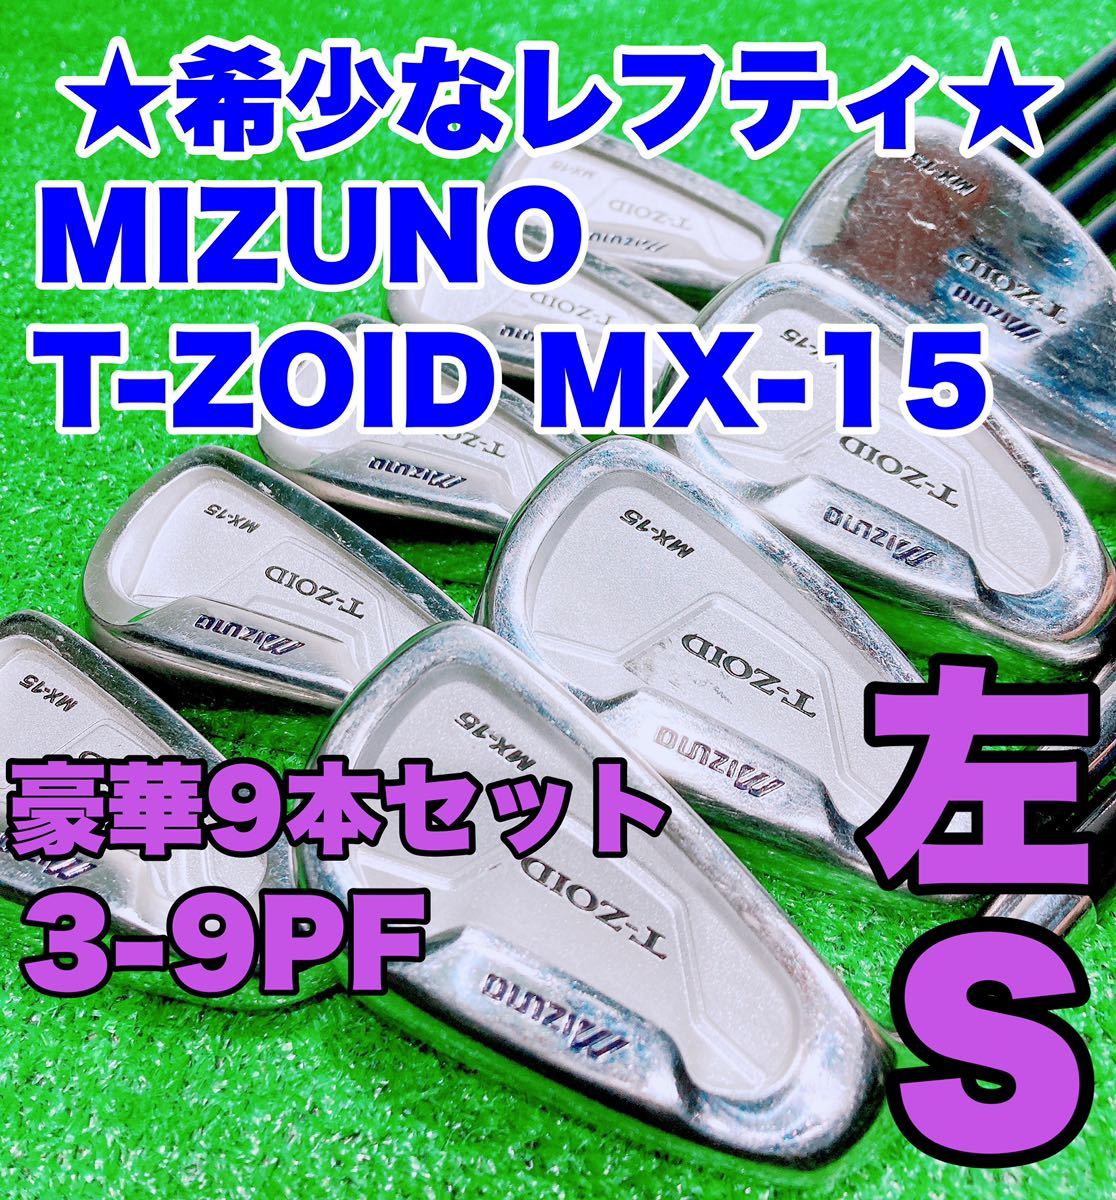 ☆希少なレフティ 豪華9本セット☆ミズノ MIZUNO T-ZOID MX-15-